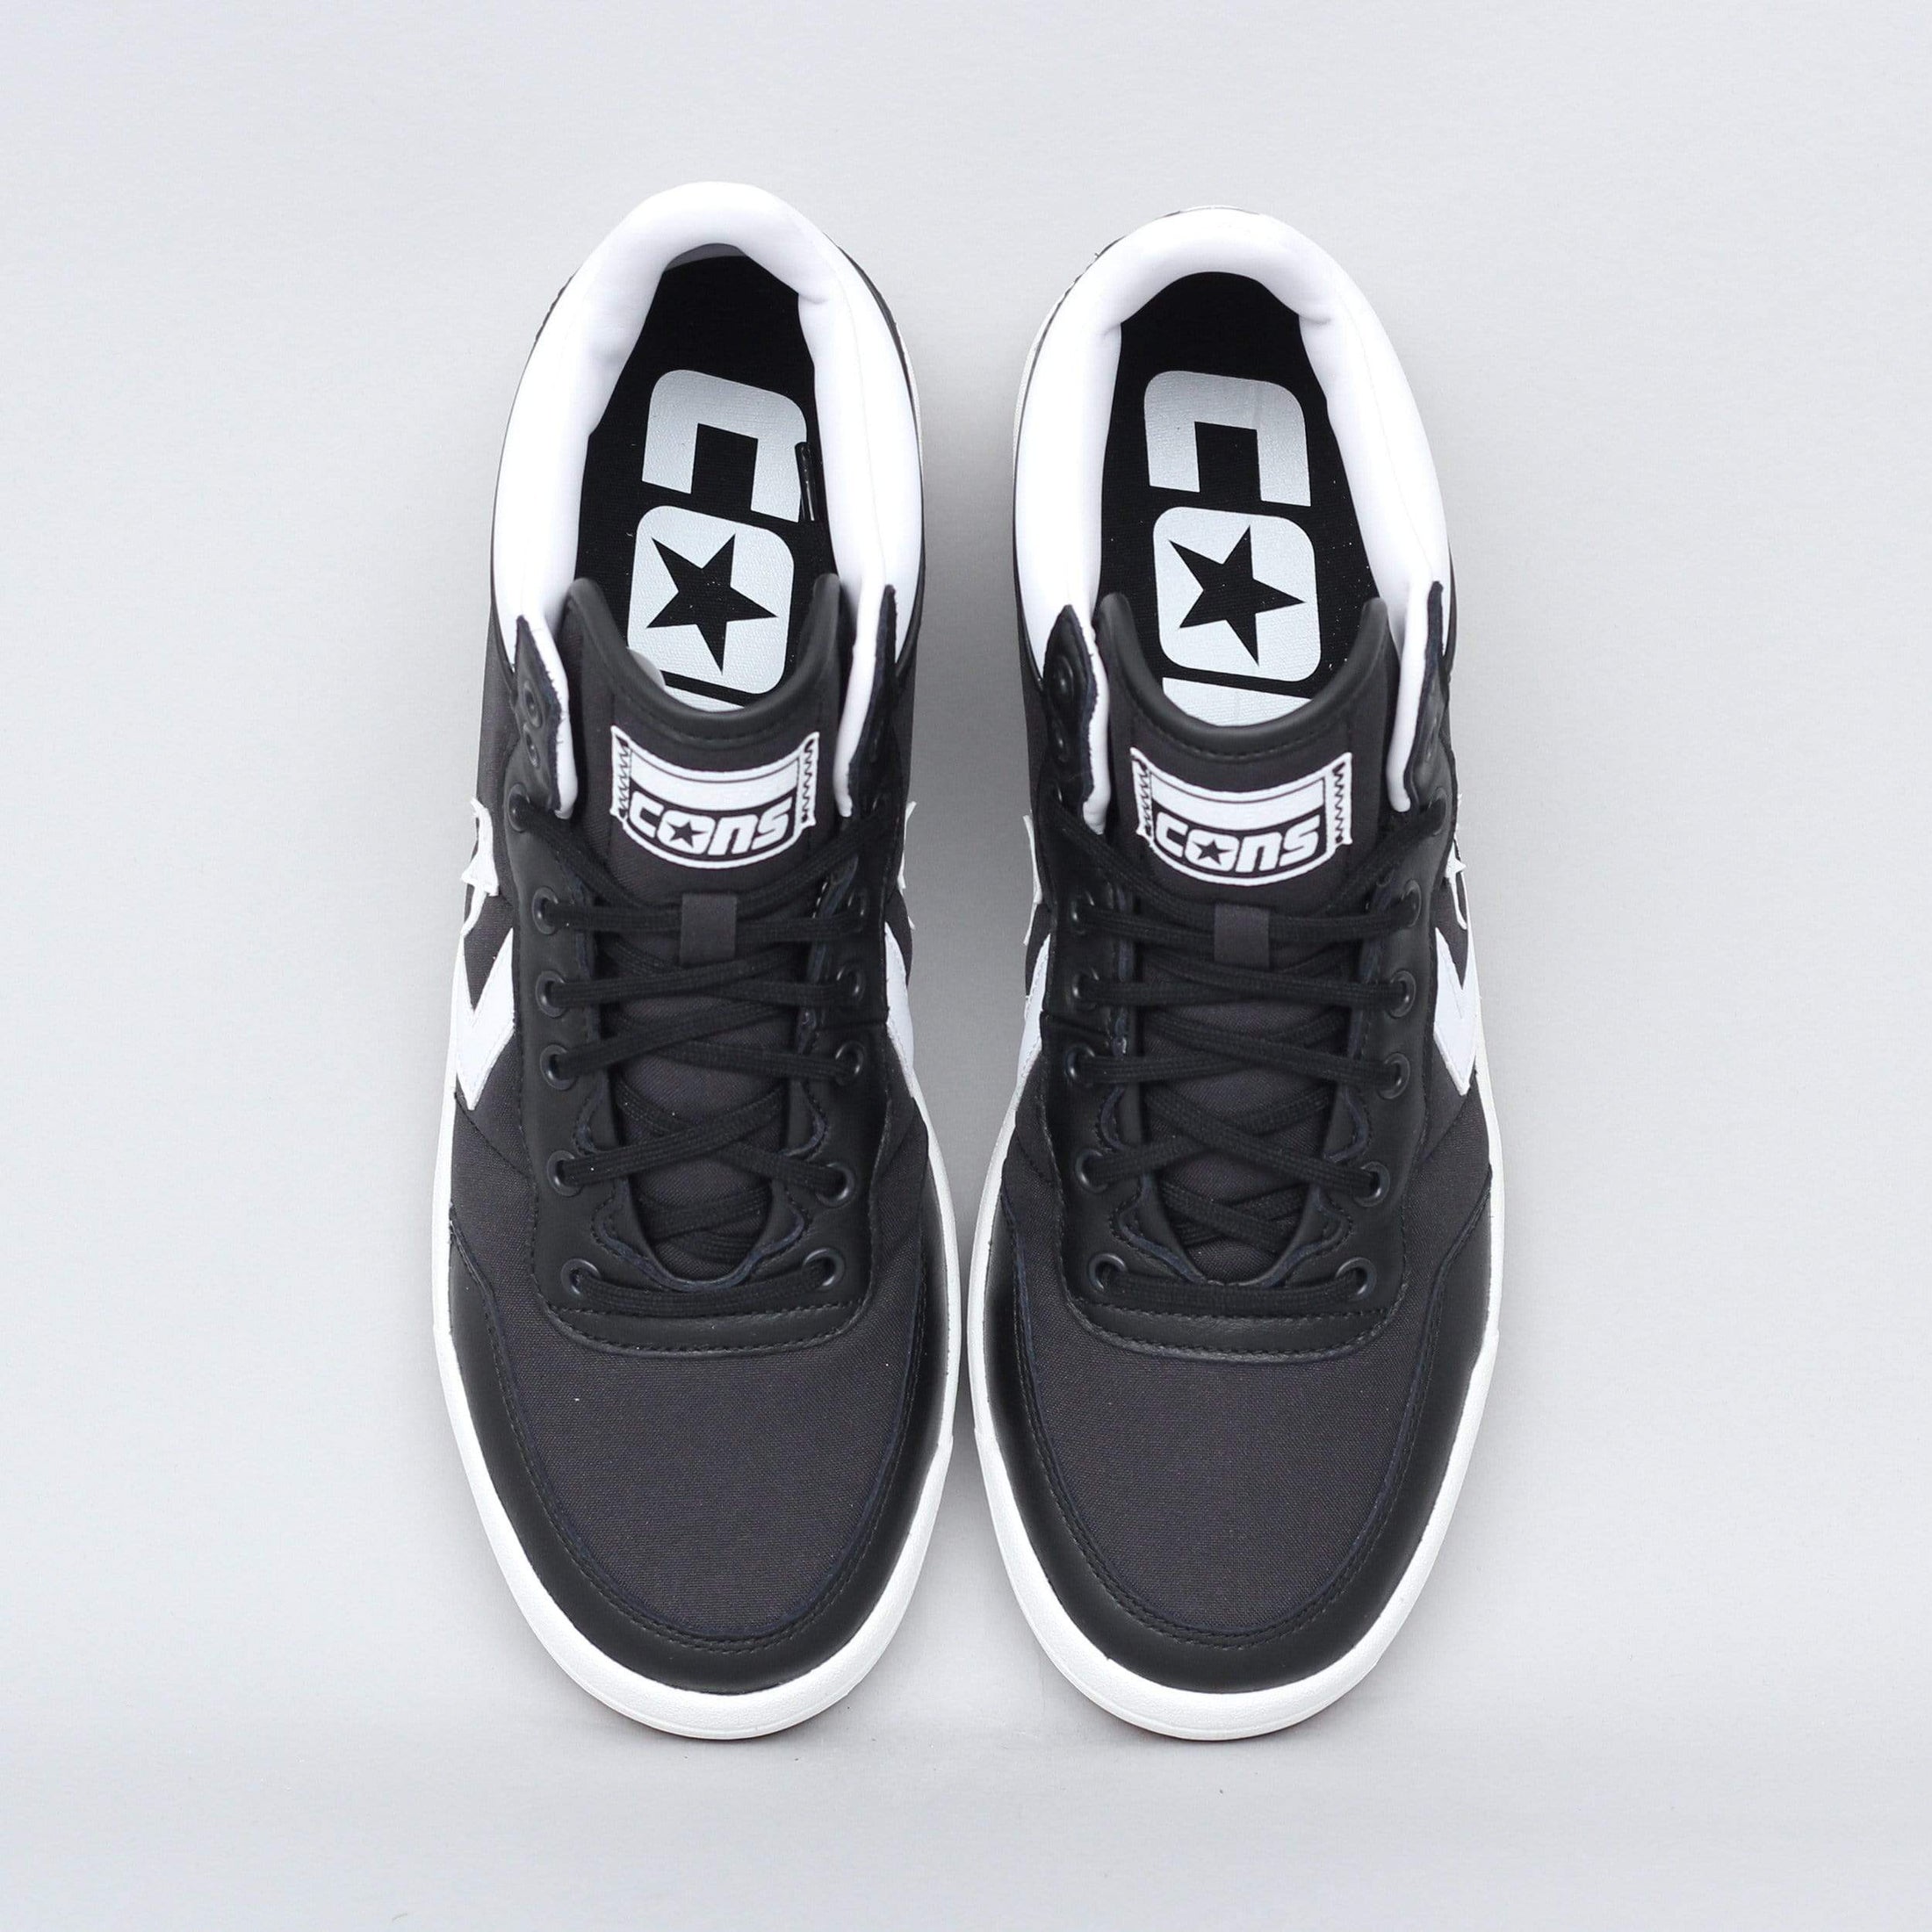 Converse Fastbreak Pro Mid Shoes Black / White / Gum